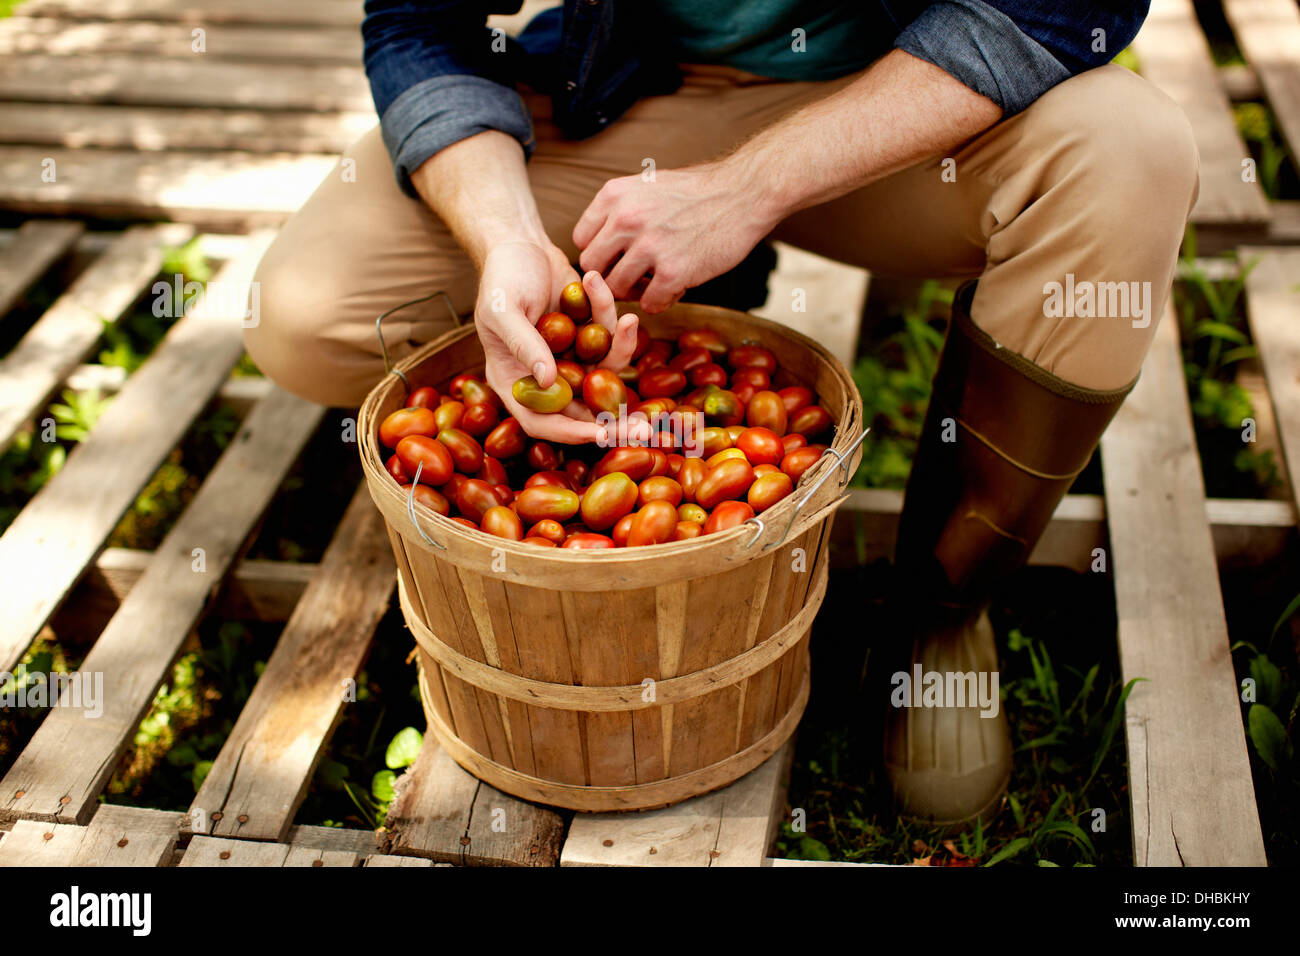 Un homme à genoux et le tri des légumes frais cueillis, tomates italiennes. Banque D'Images